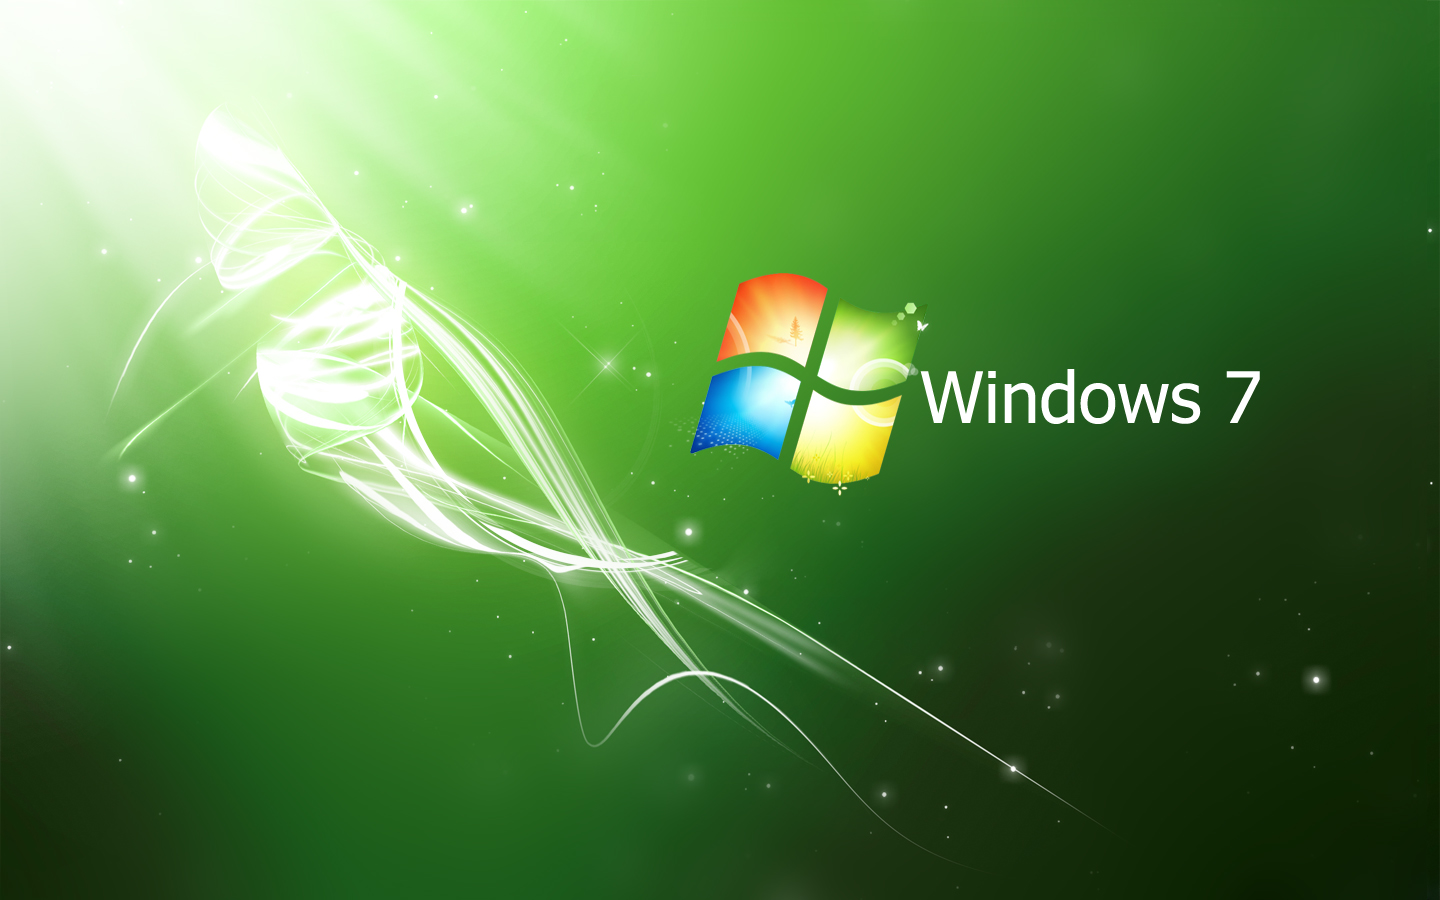 Crystal Pack cho Windows 7 mang đến cho bạn những bức ảnh nền đầy màu sắc với các tông màu xanh lá cây, xanh dương và đỏ HD. Cho dù bạn đang là một người thích sự tươi mới hay là người yêu thích sự đậm nét, chắc chắn Crystal Pack sẽ làm hài lòng bạn với bộ sưu tập hình nền độc đáo của mình.